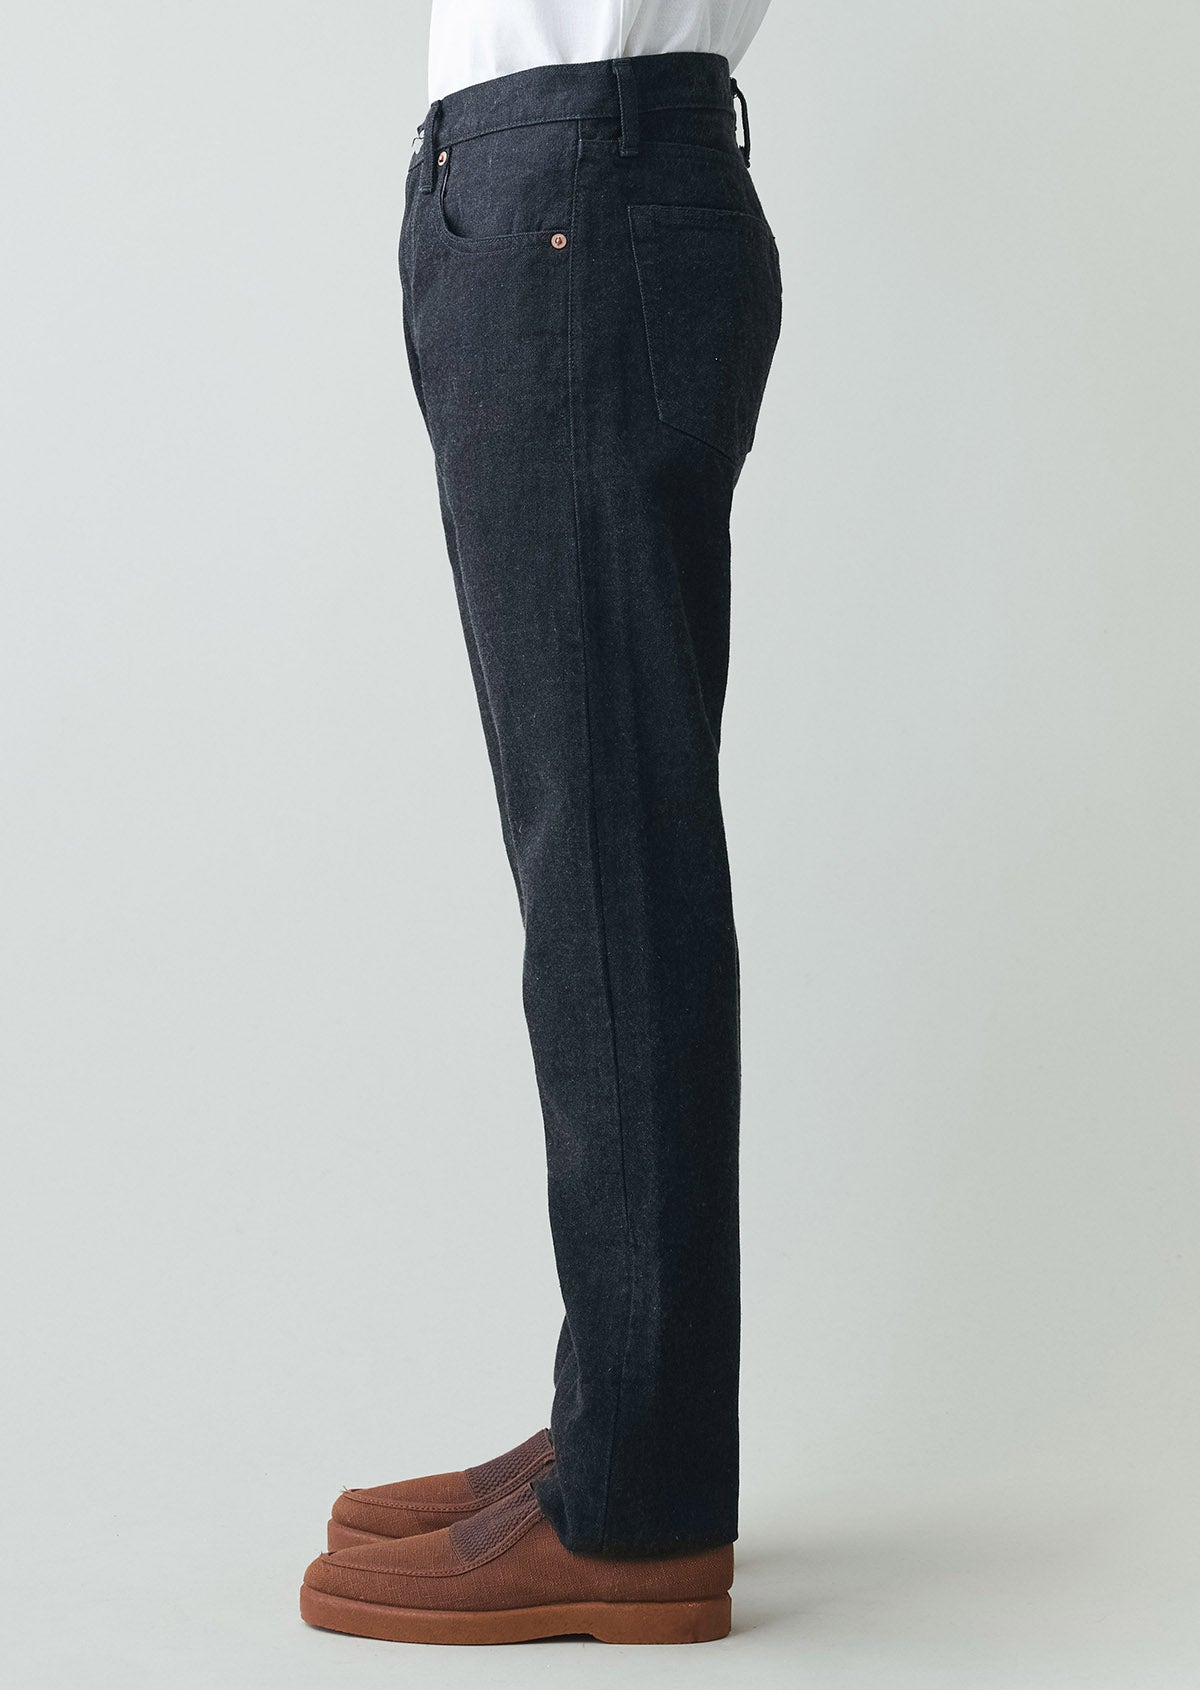 HANDROOM／ 5 Pocket Jeans Slim Fit